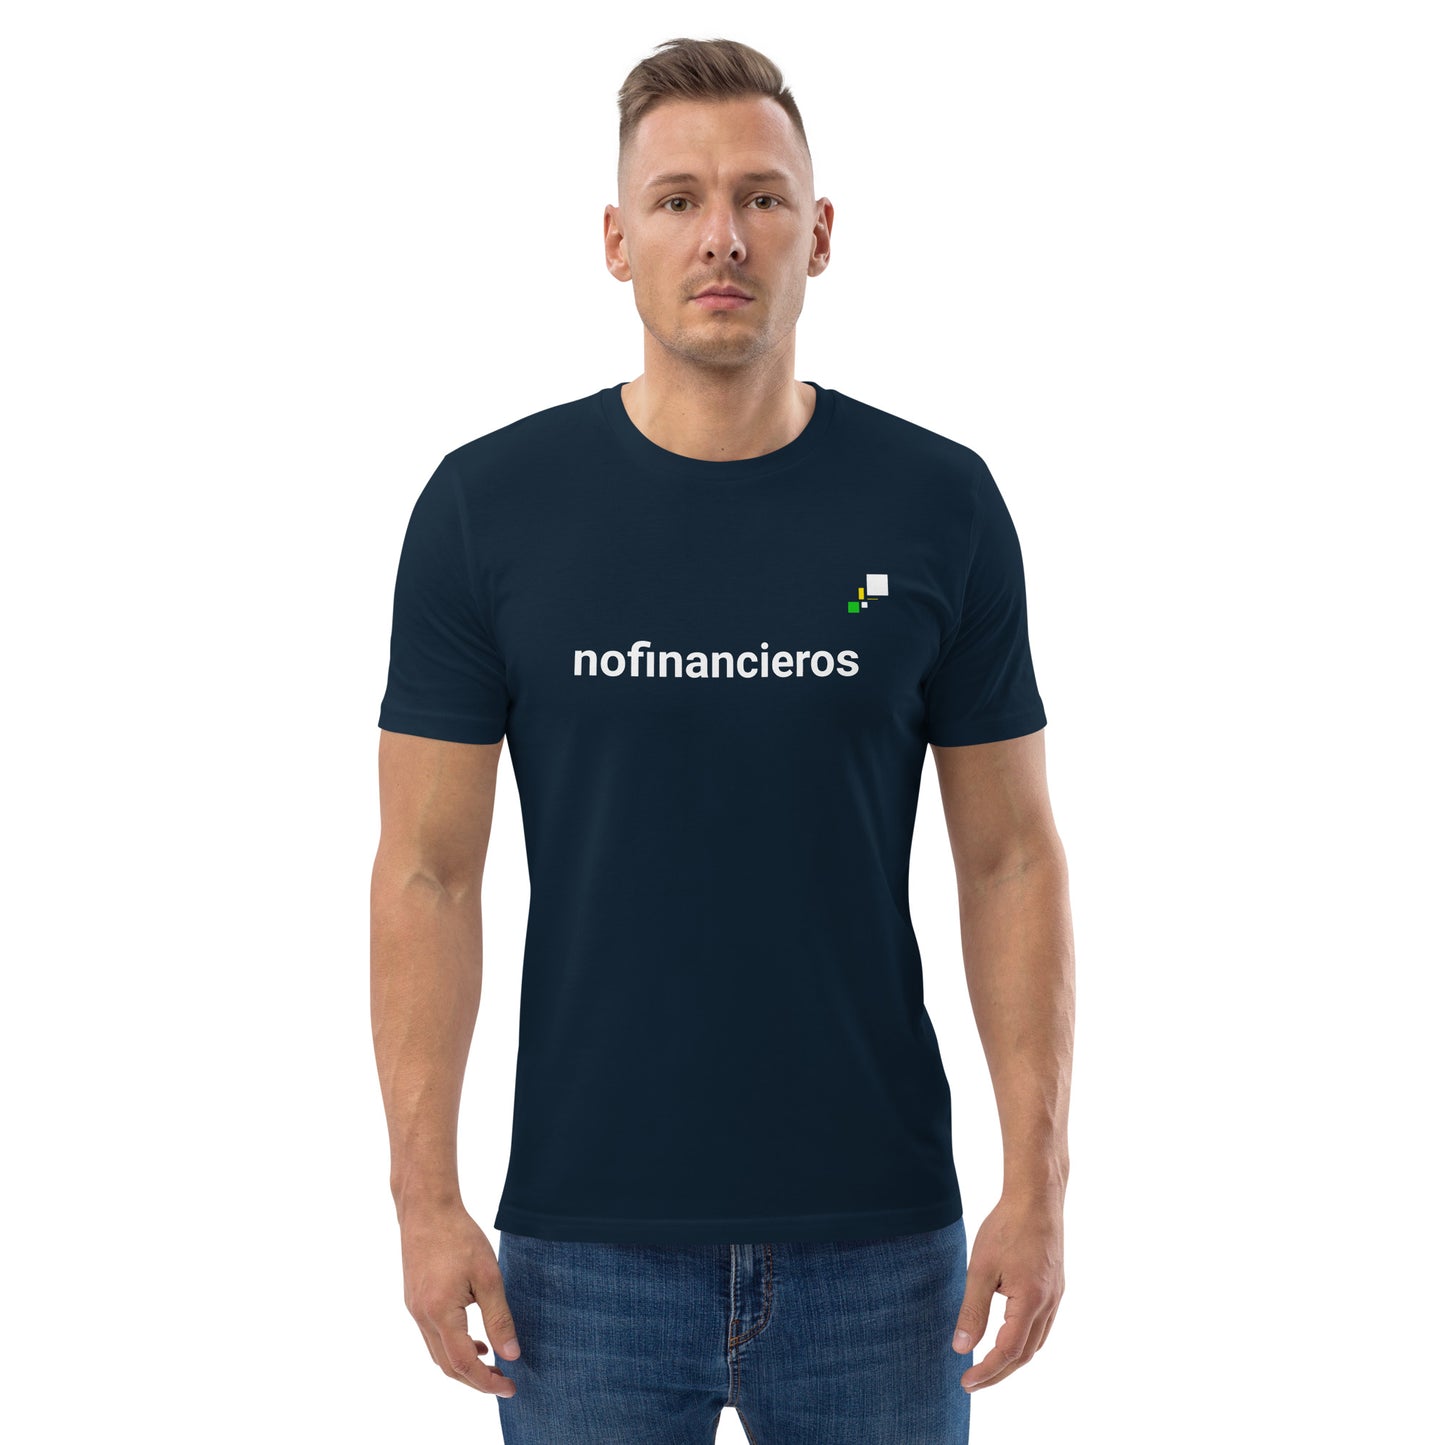 nofinancieros azul navy - Camiseta de algodón orgánico unisex